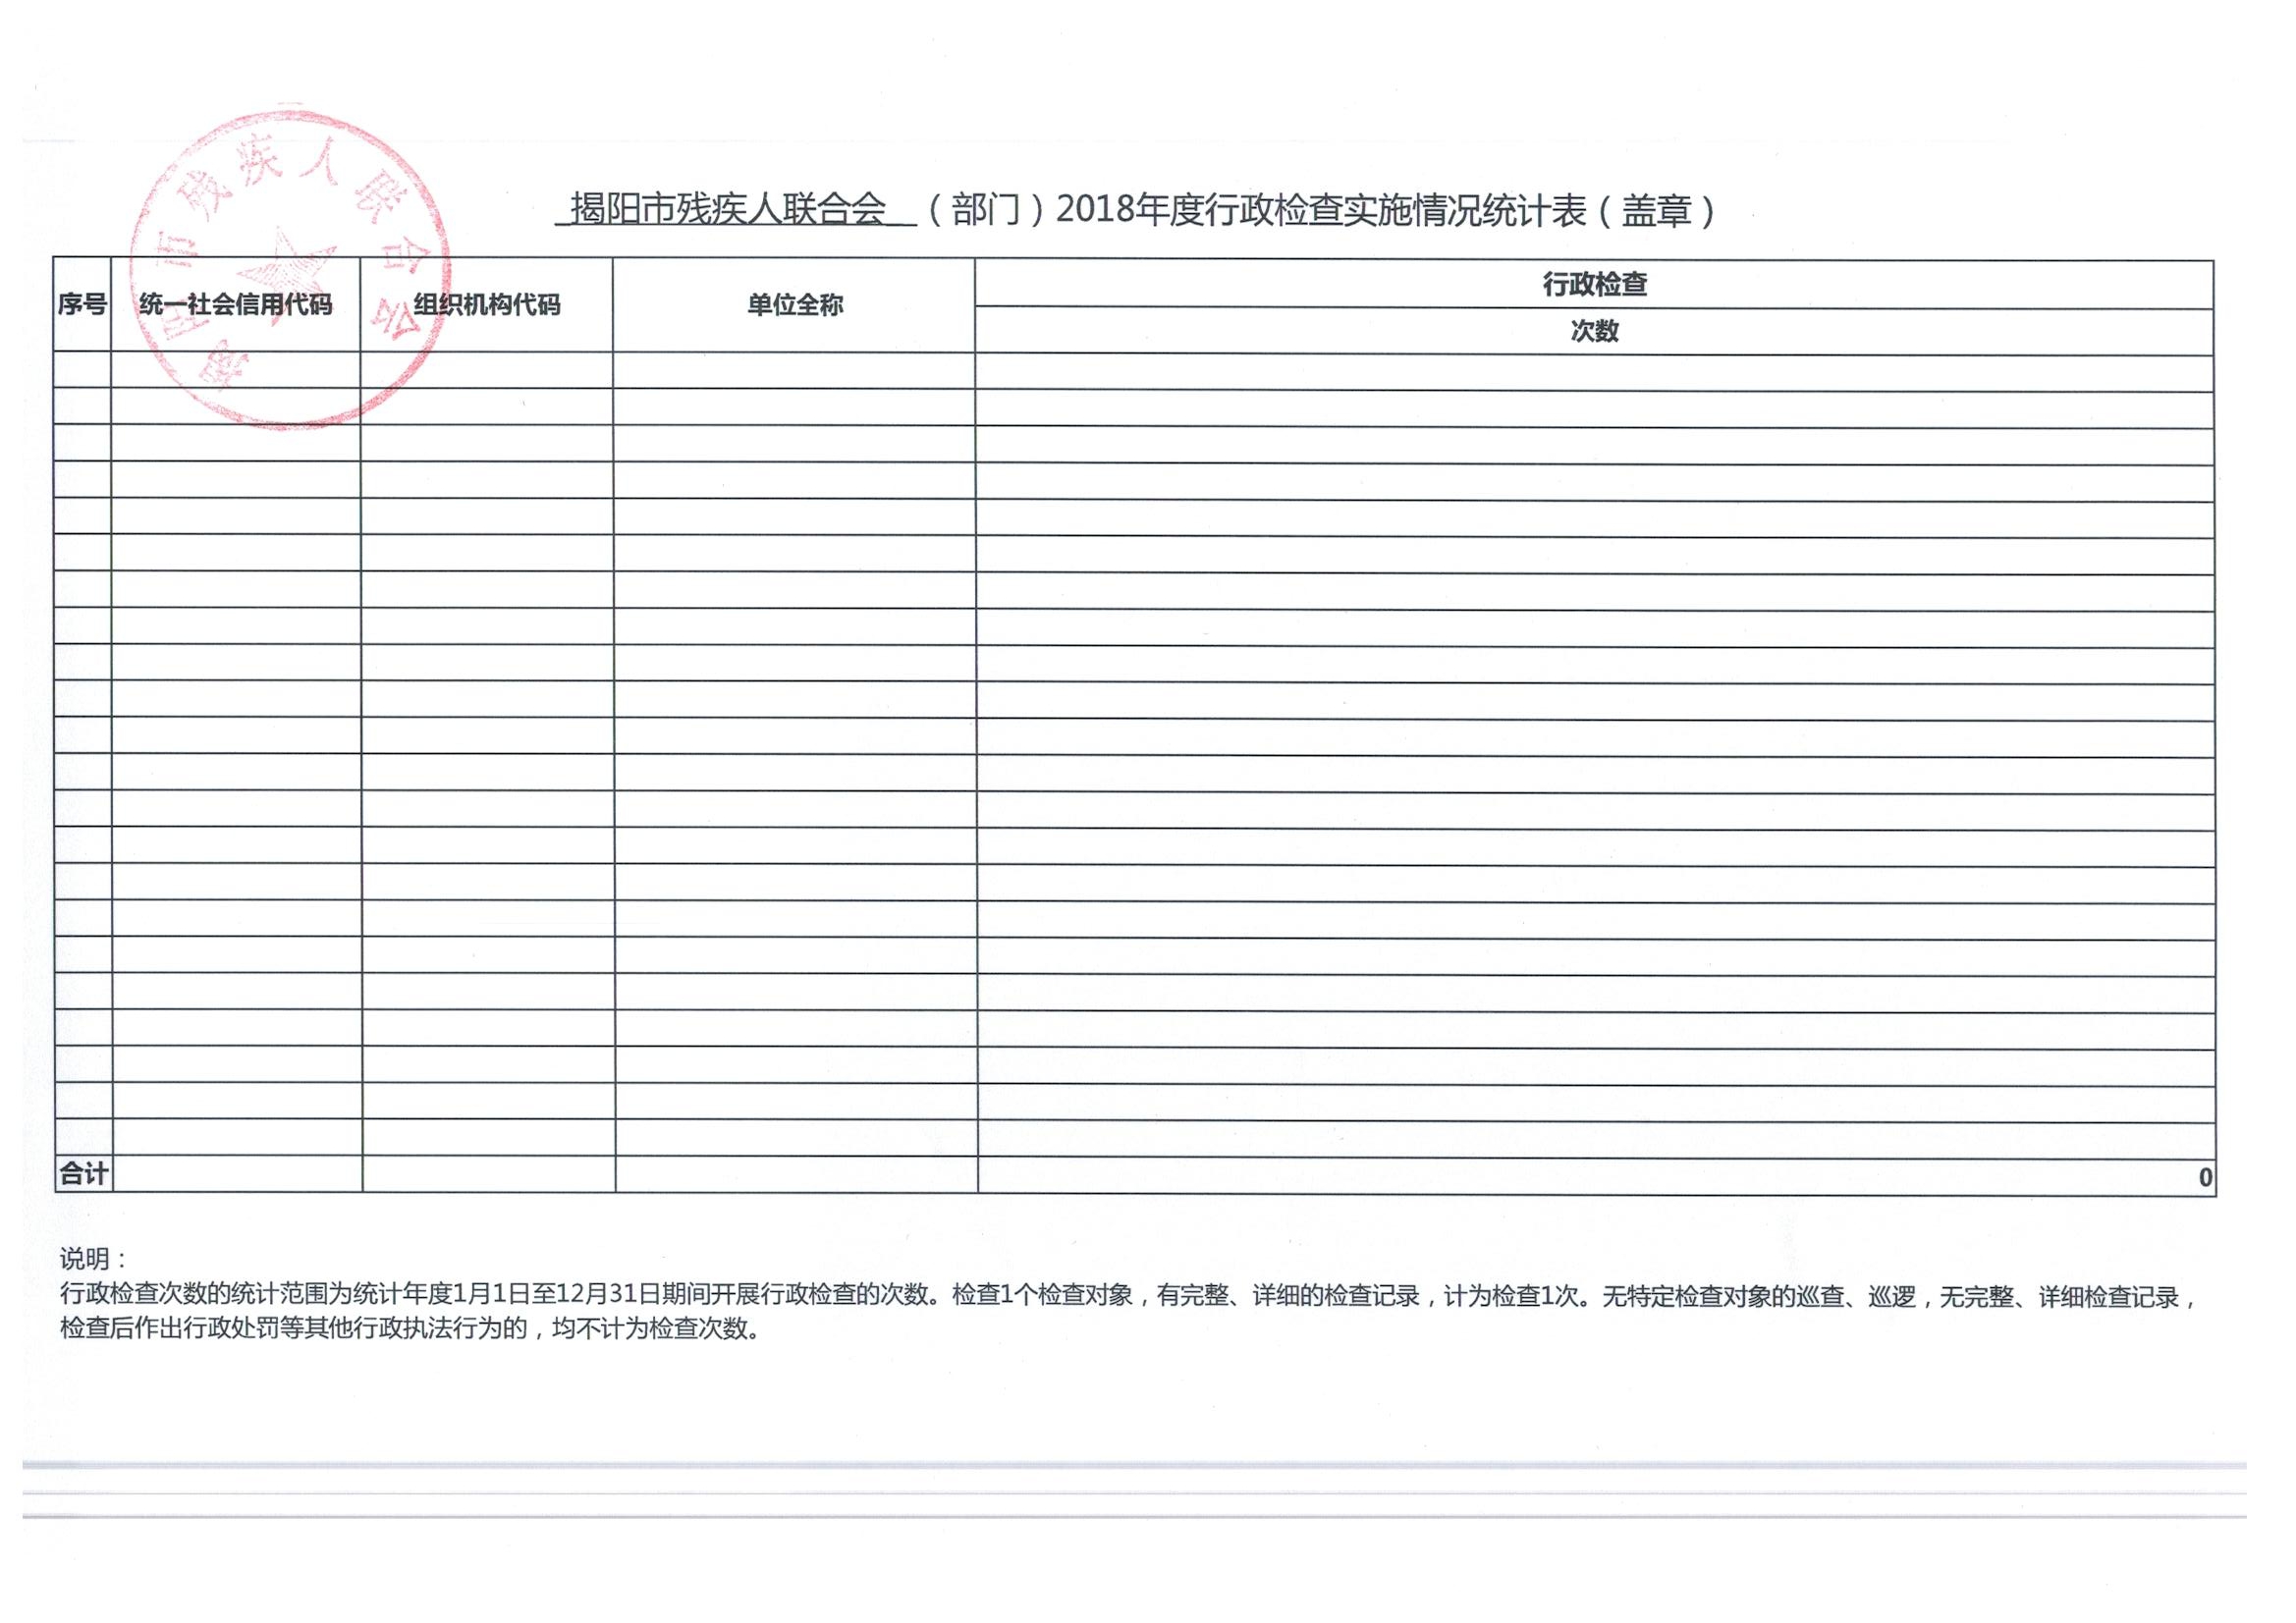 揭陽市殘聯行政執法數據公開(圖6)